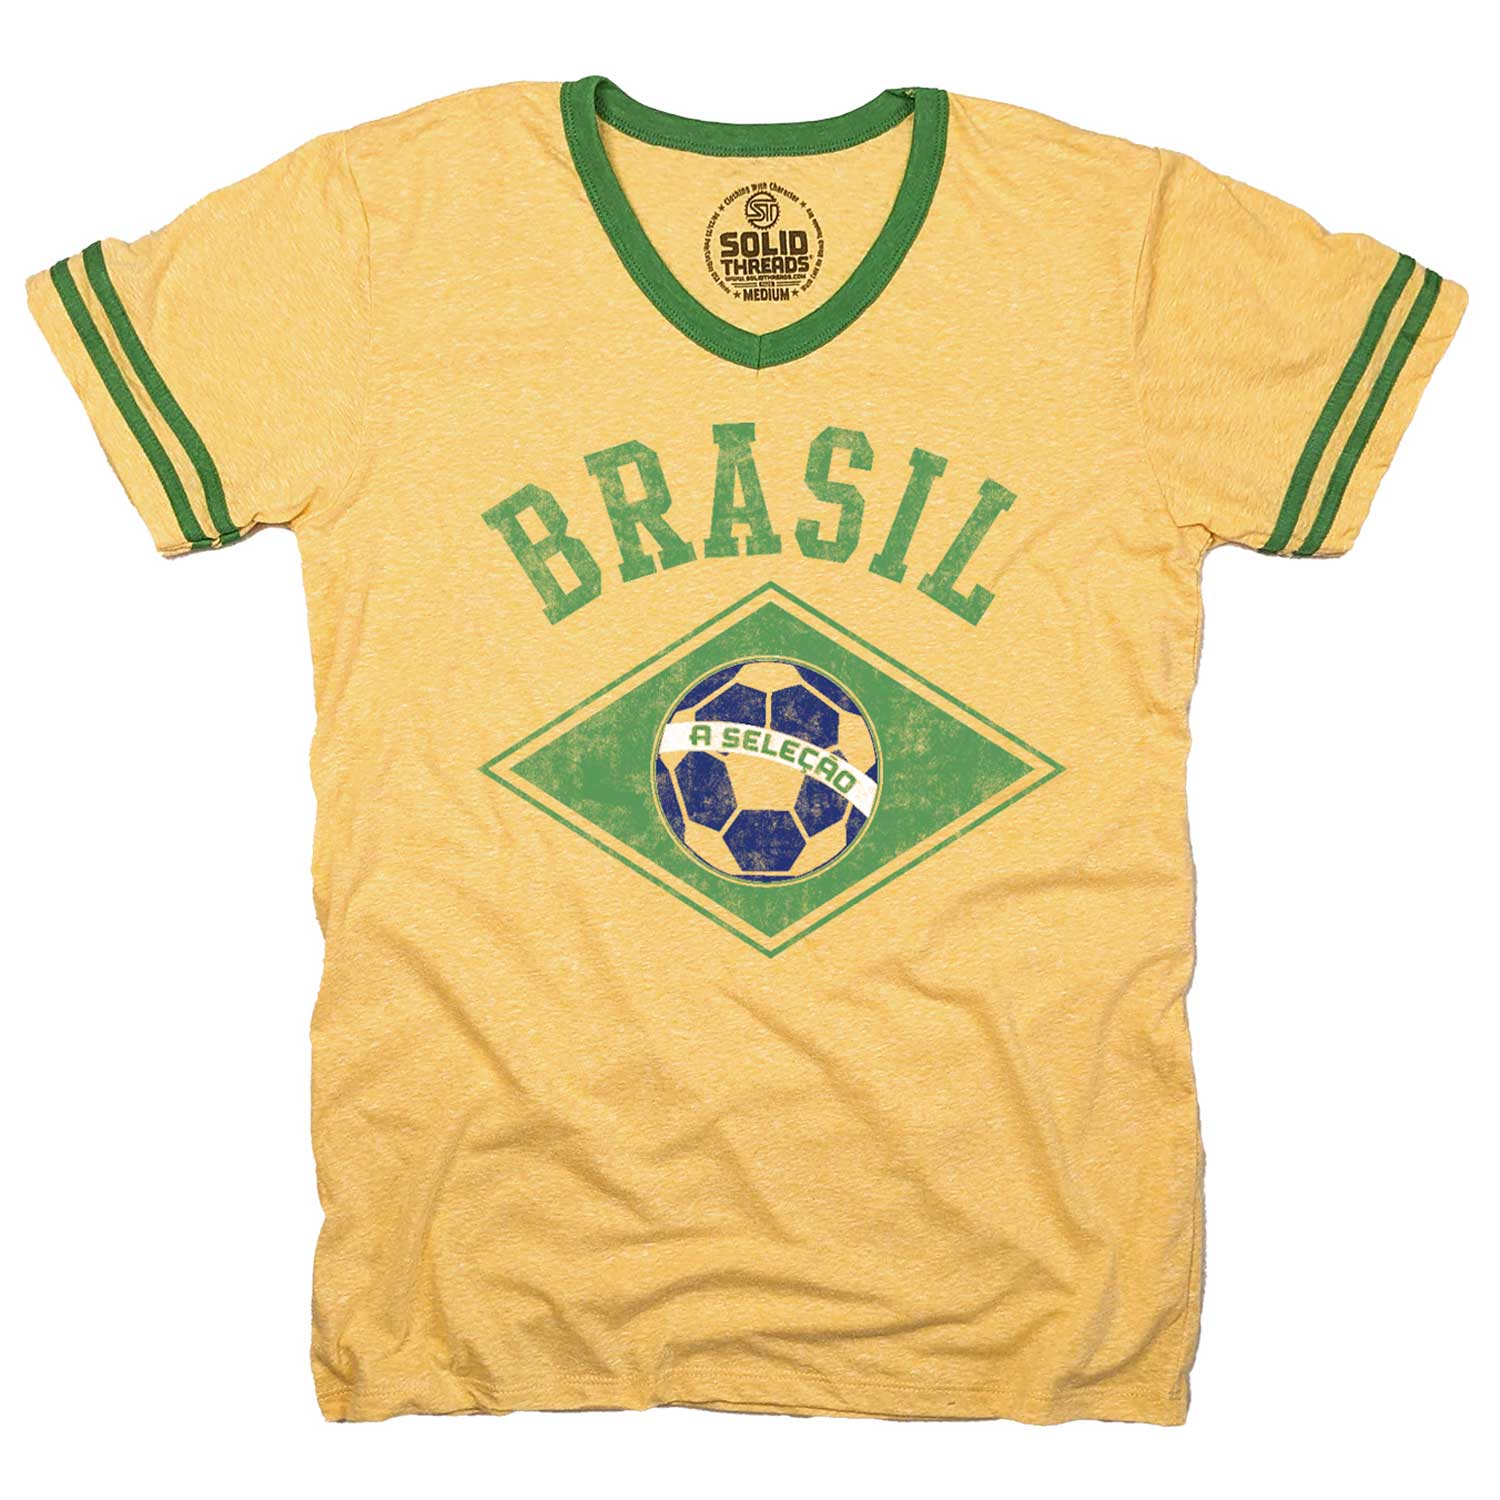 t shirt brazil soccer team